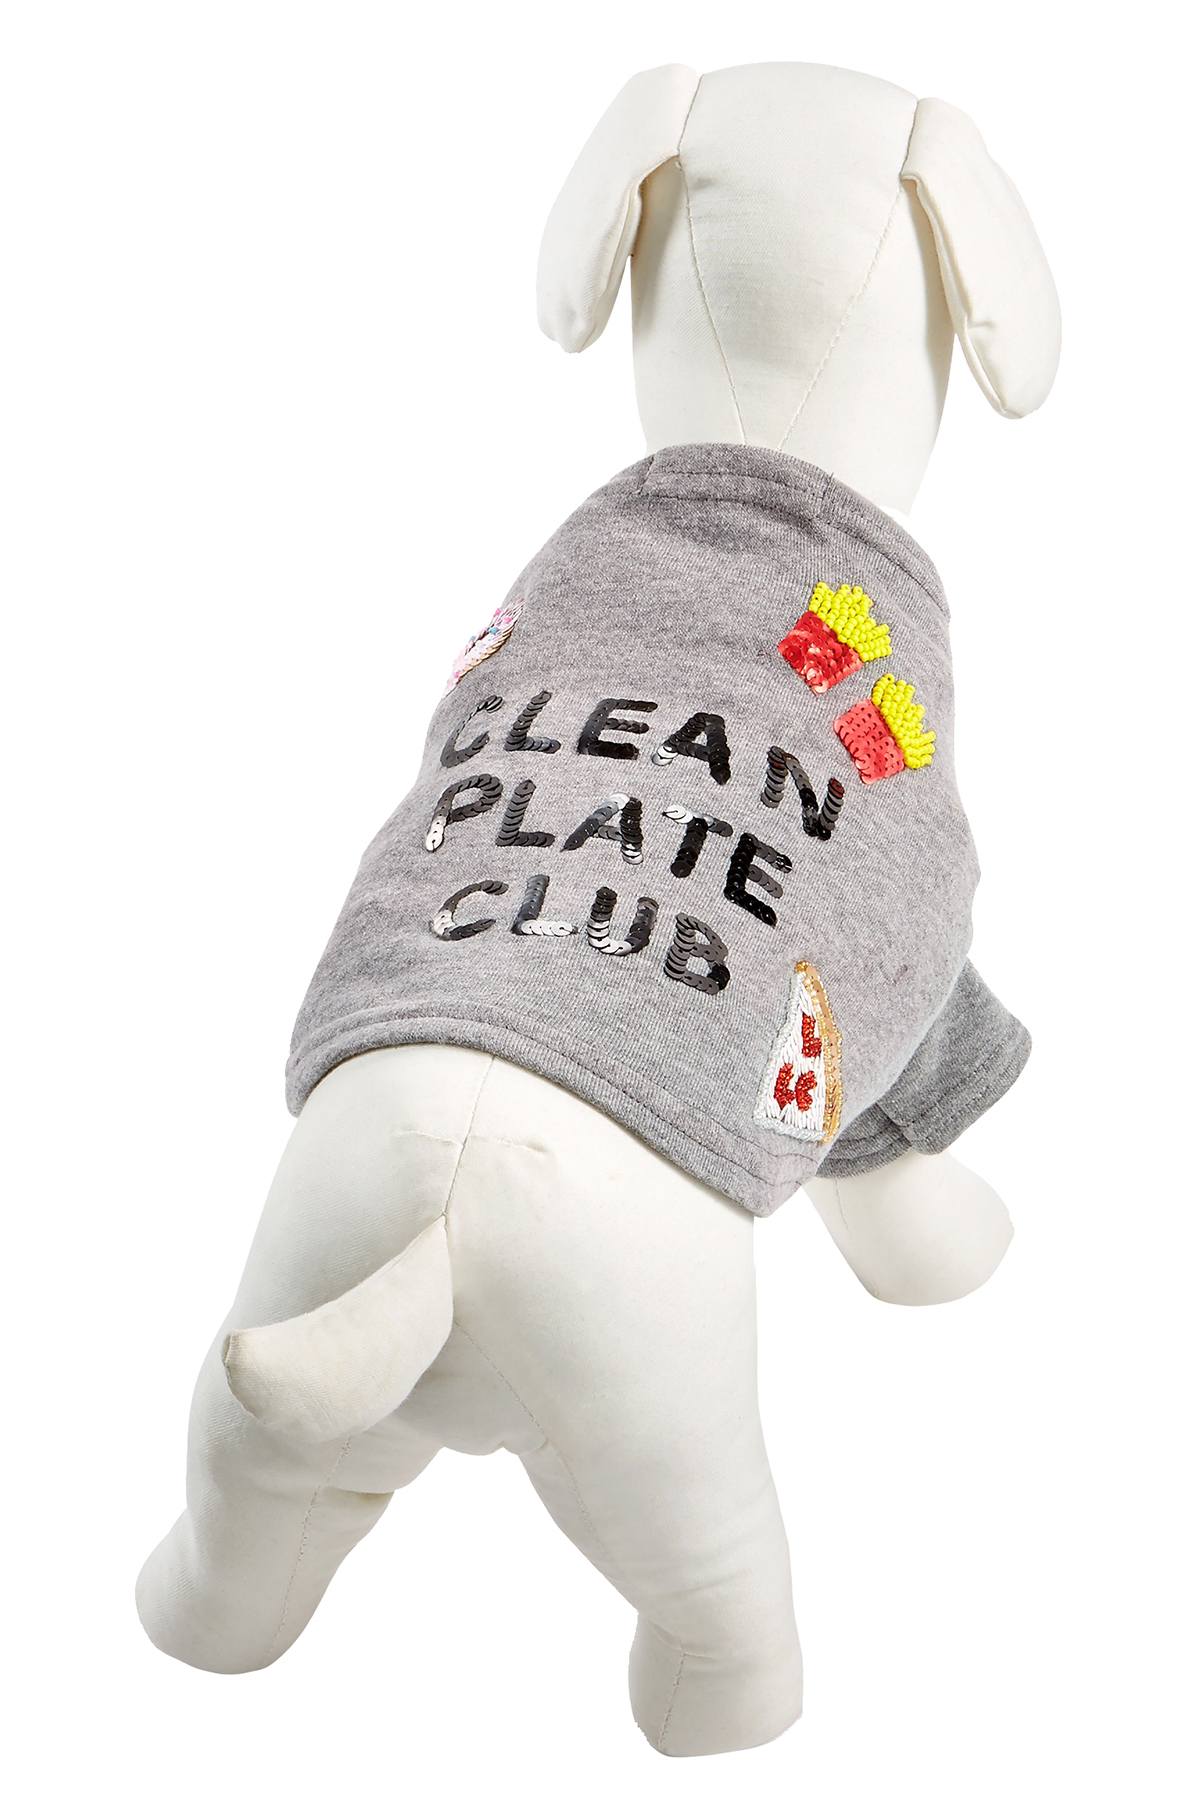 Bow & Drape Heather Grey Clean Plate Club Dog Sweatshirt